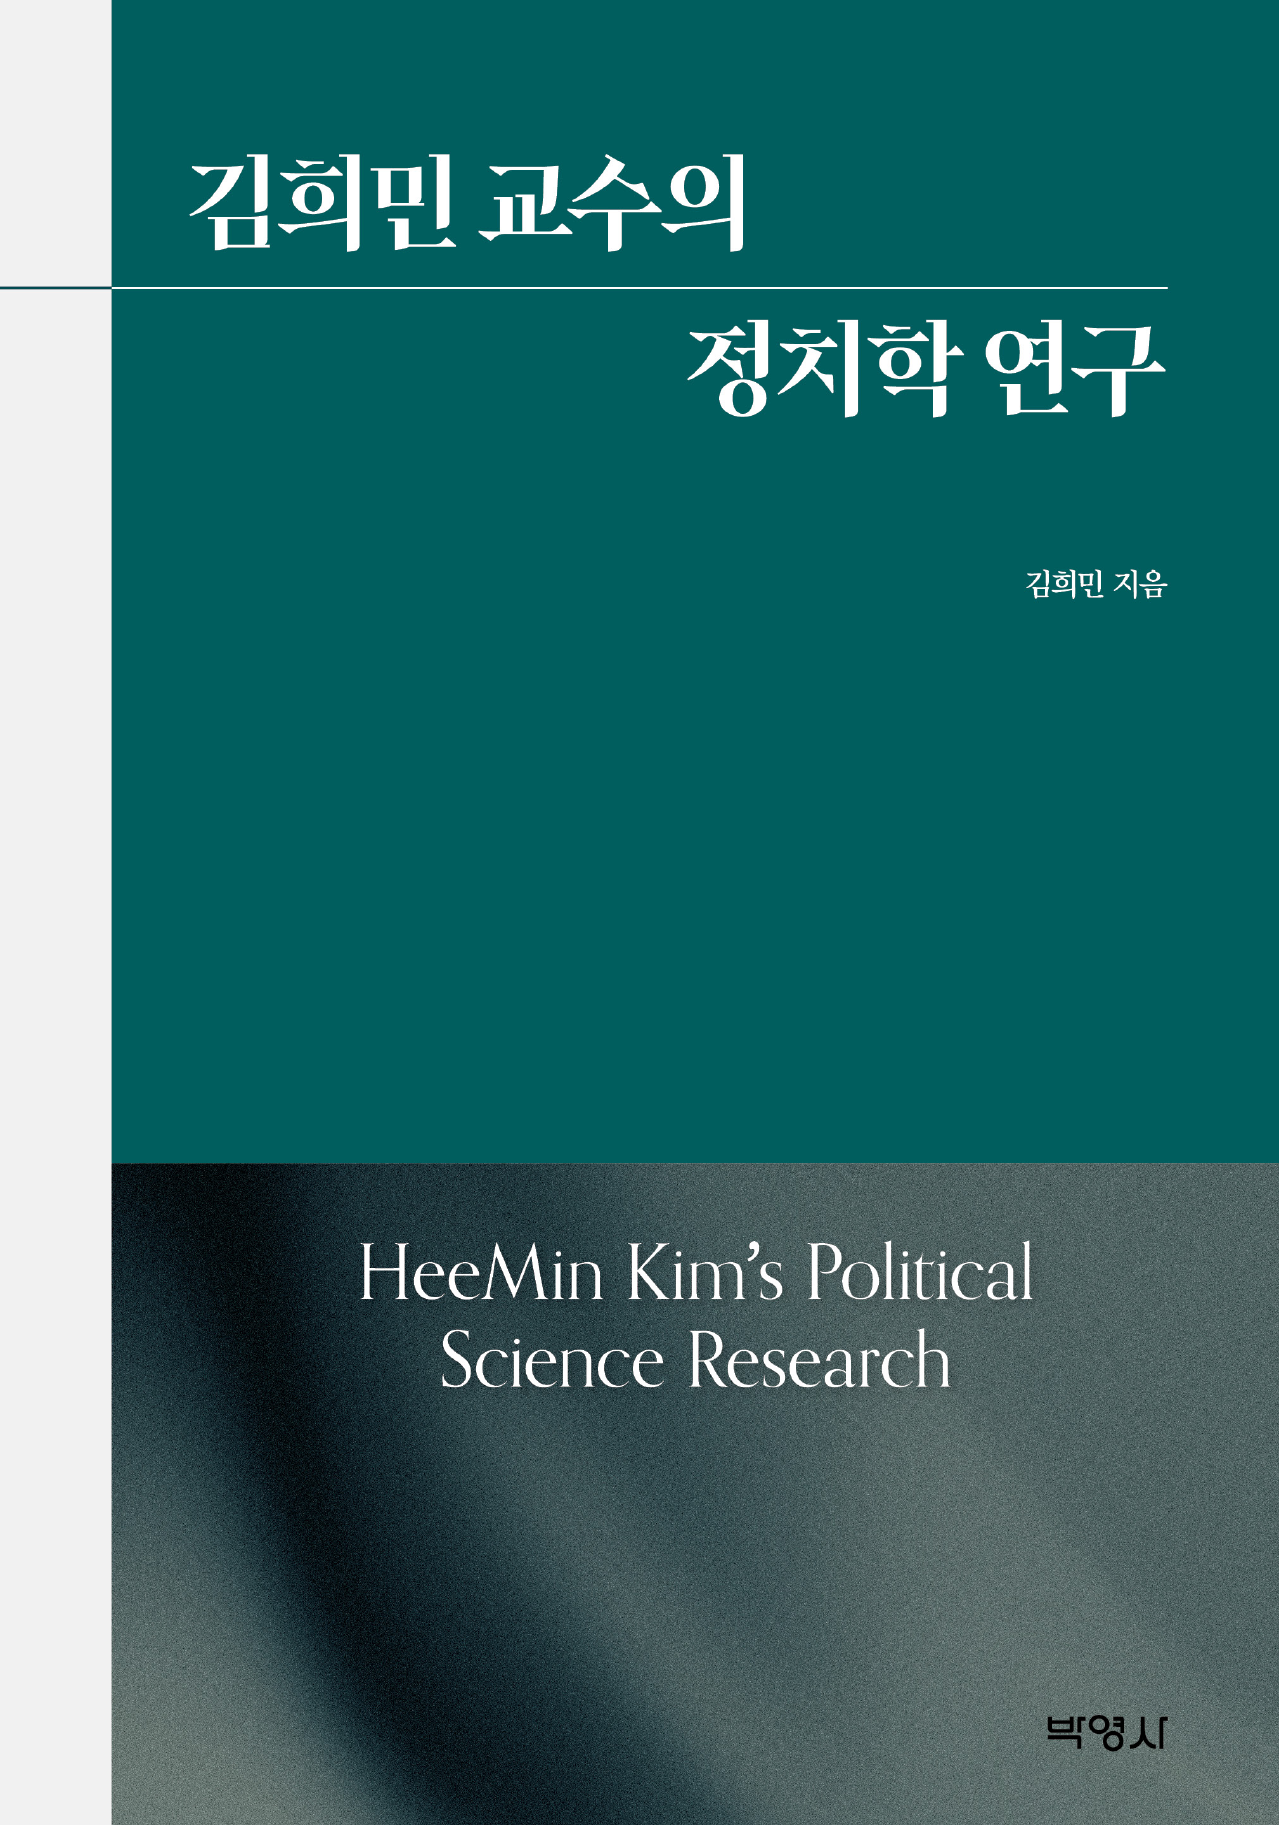 김희민 교수의 정치학 연구